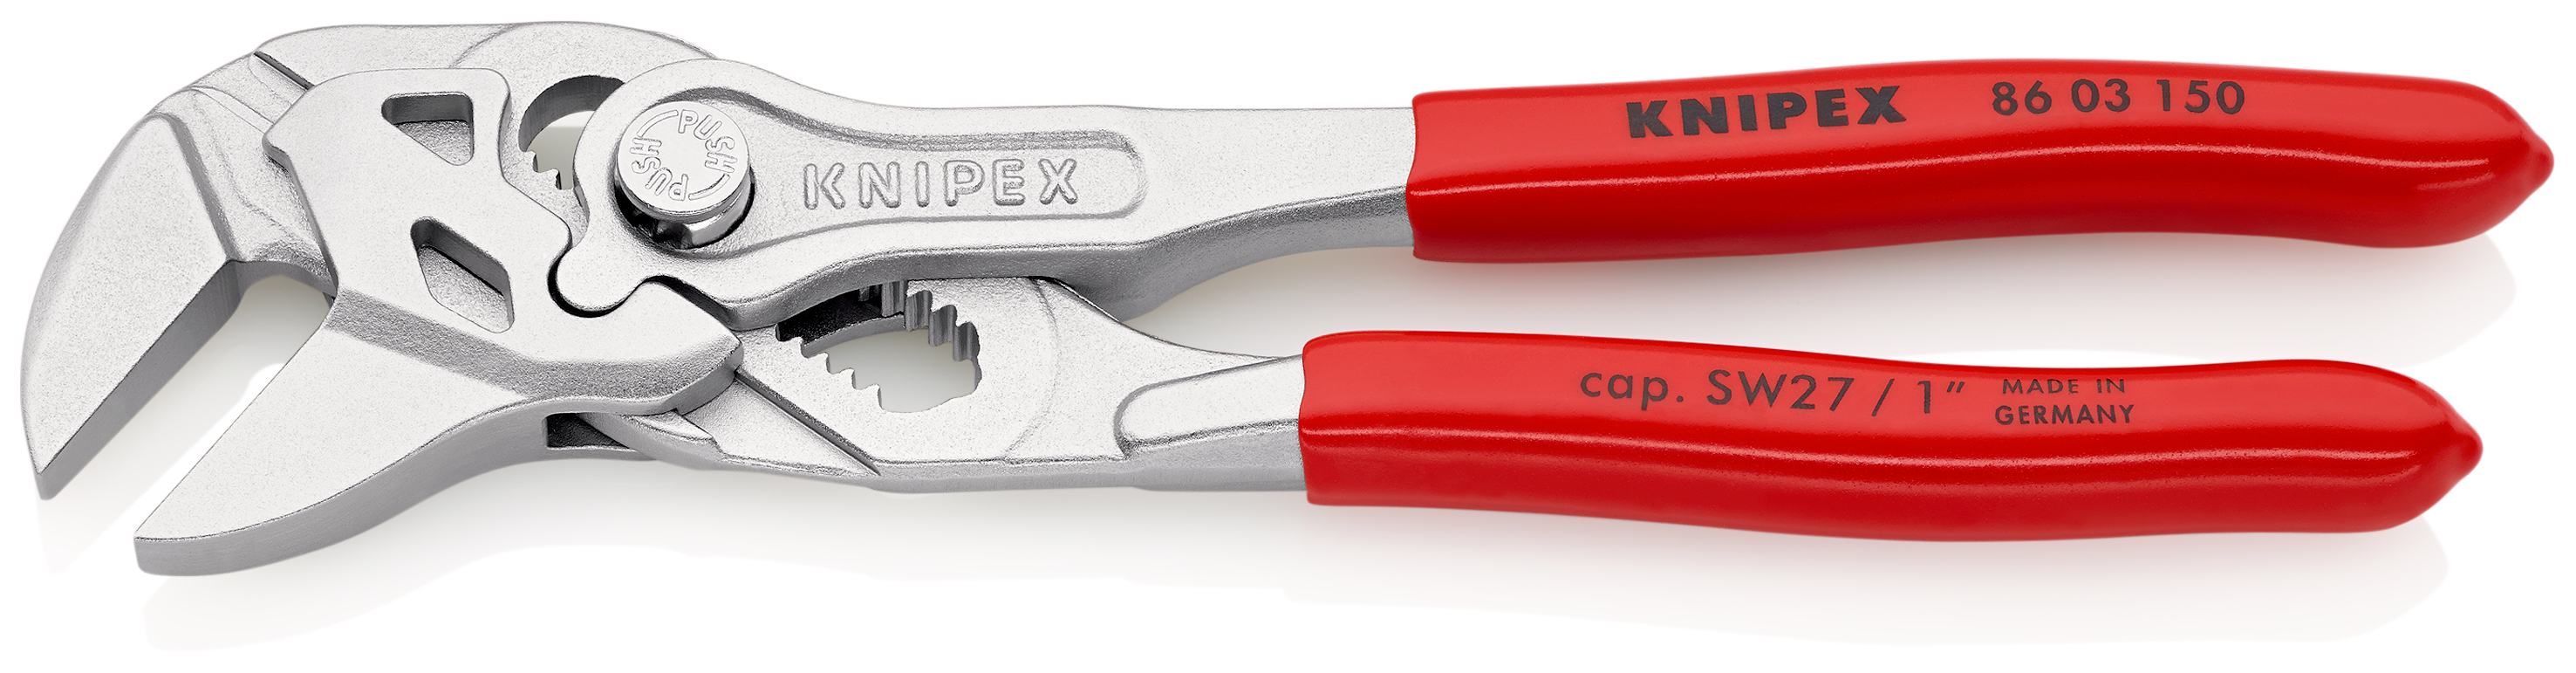 Knipex-Werk Mini-Zangenschlüssel 150mm 86 03 150